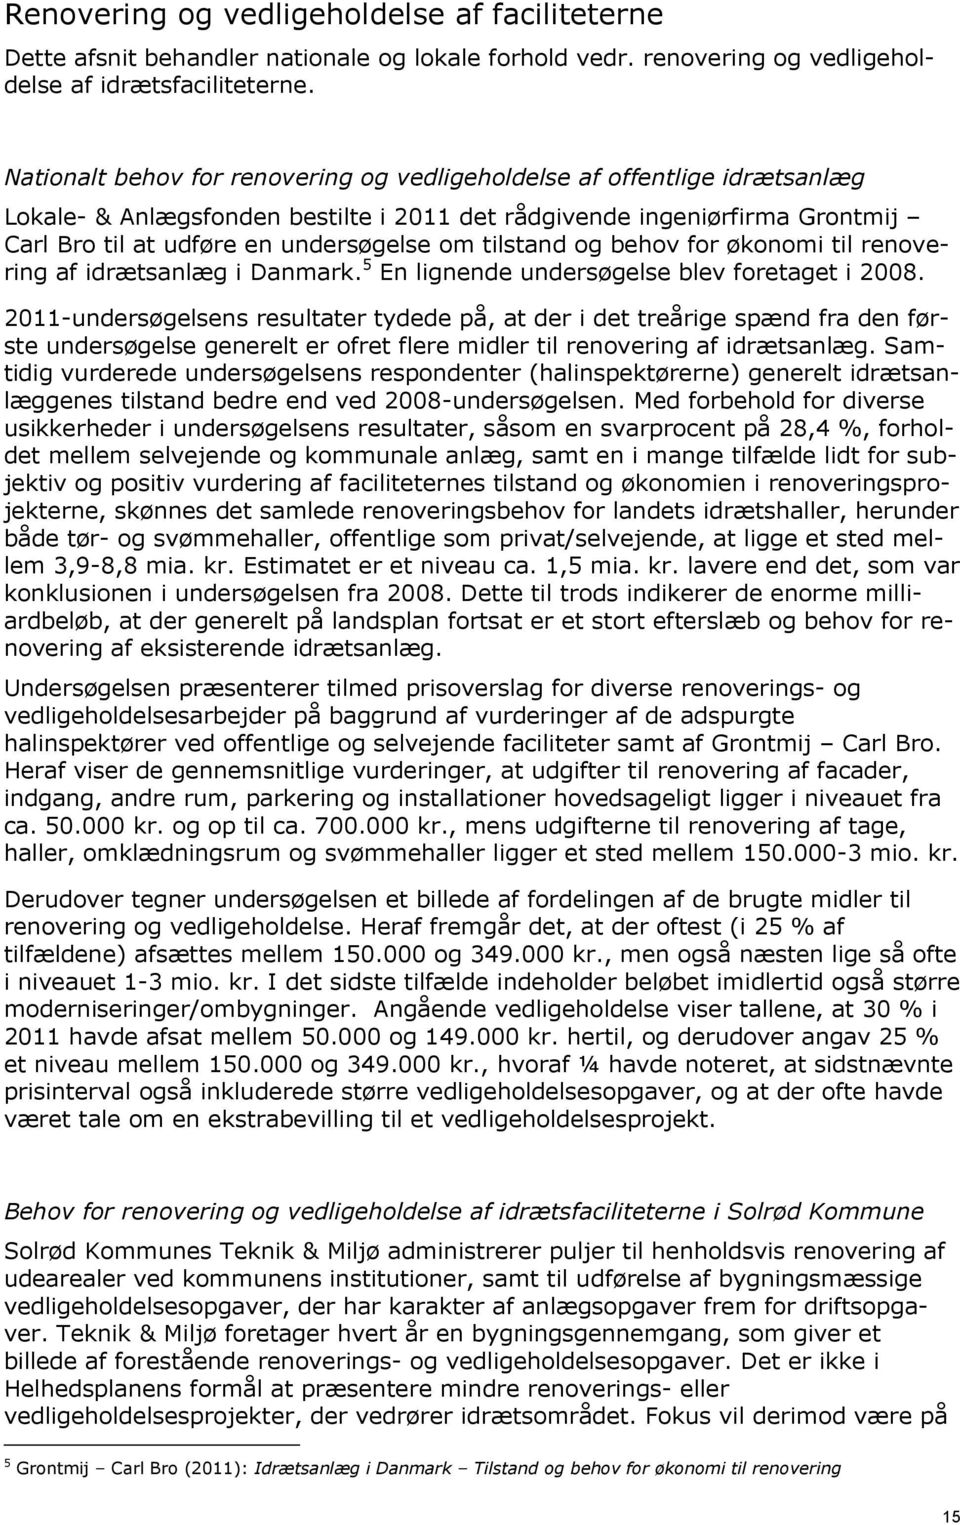 tilstand og behov for økonomi til renovering af idrætsanlæg i Danmark. 5 En lignende undersøgelse blev foretaget i 2008.